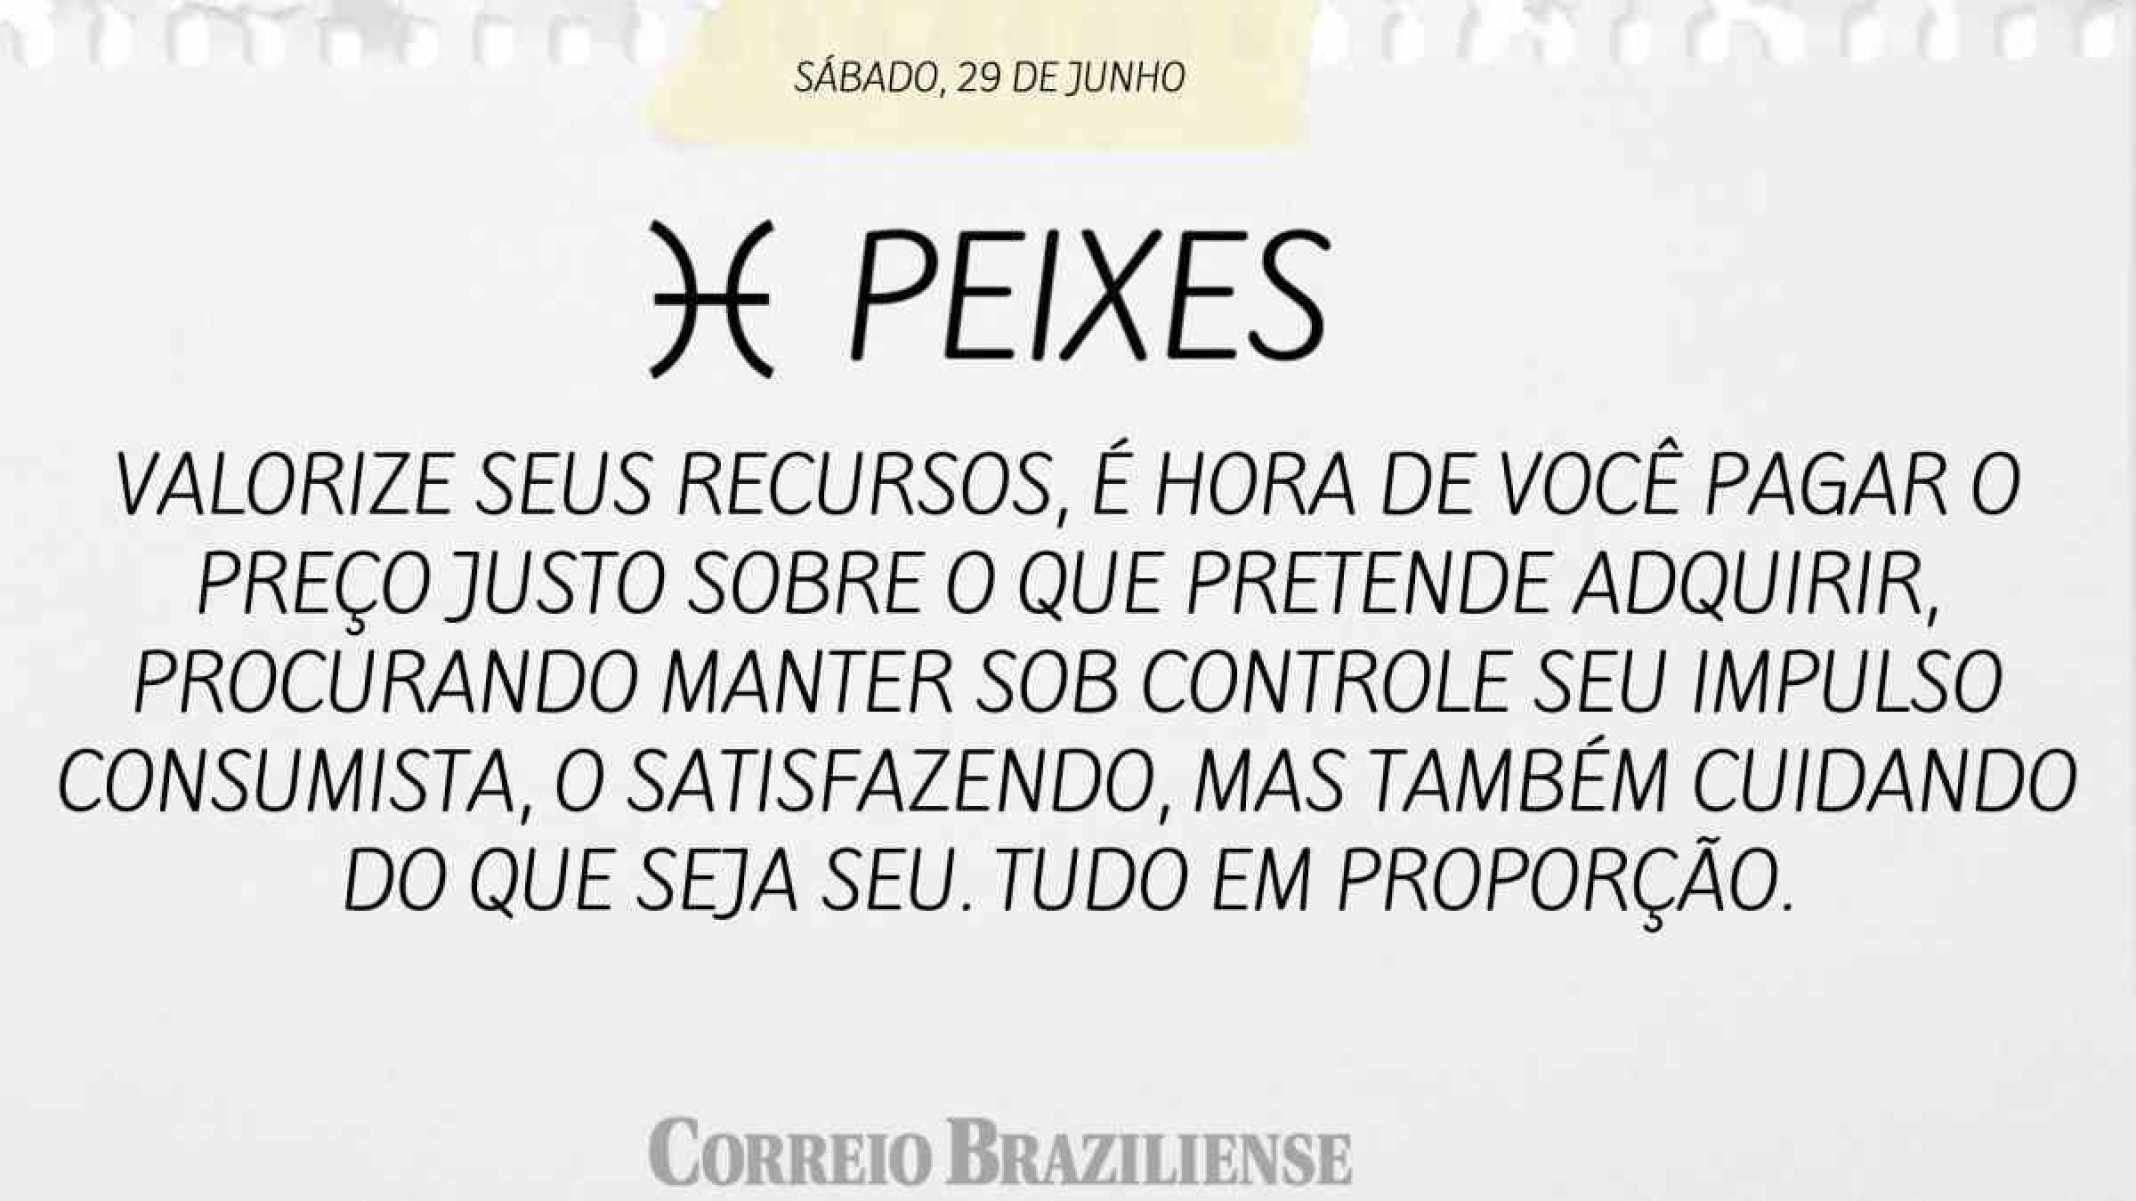 PEIXES  | 29 DE JULHO